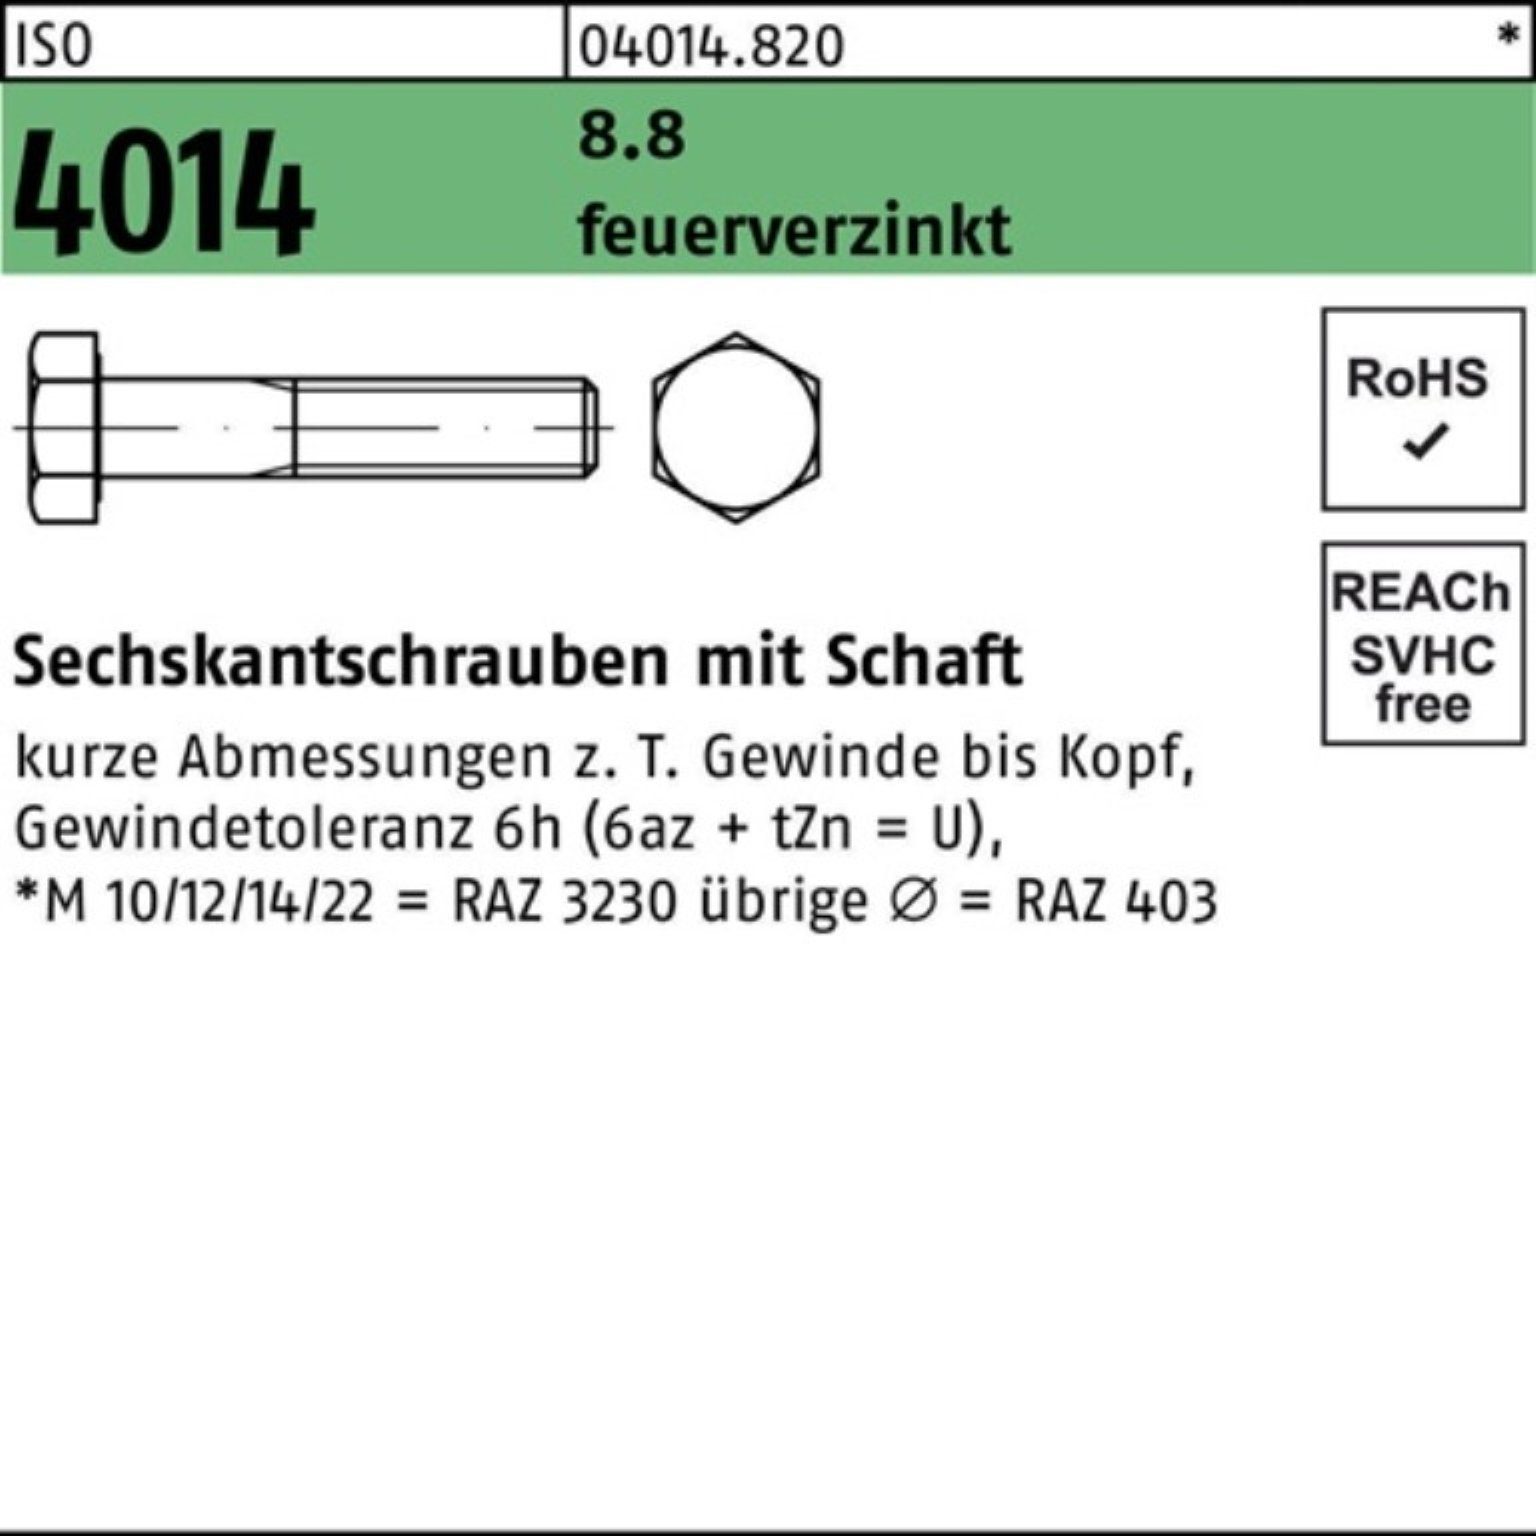 Bufab Sechskantschraube 100er Pack Sechskantschraube ISO 4014 Schaft M30x 130 8.8 feuerverz. 1